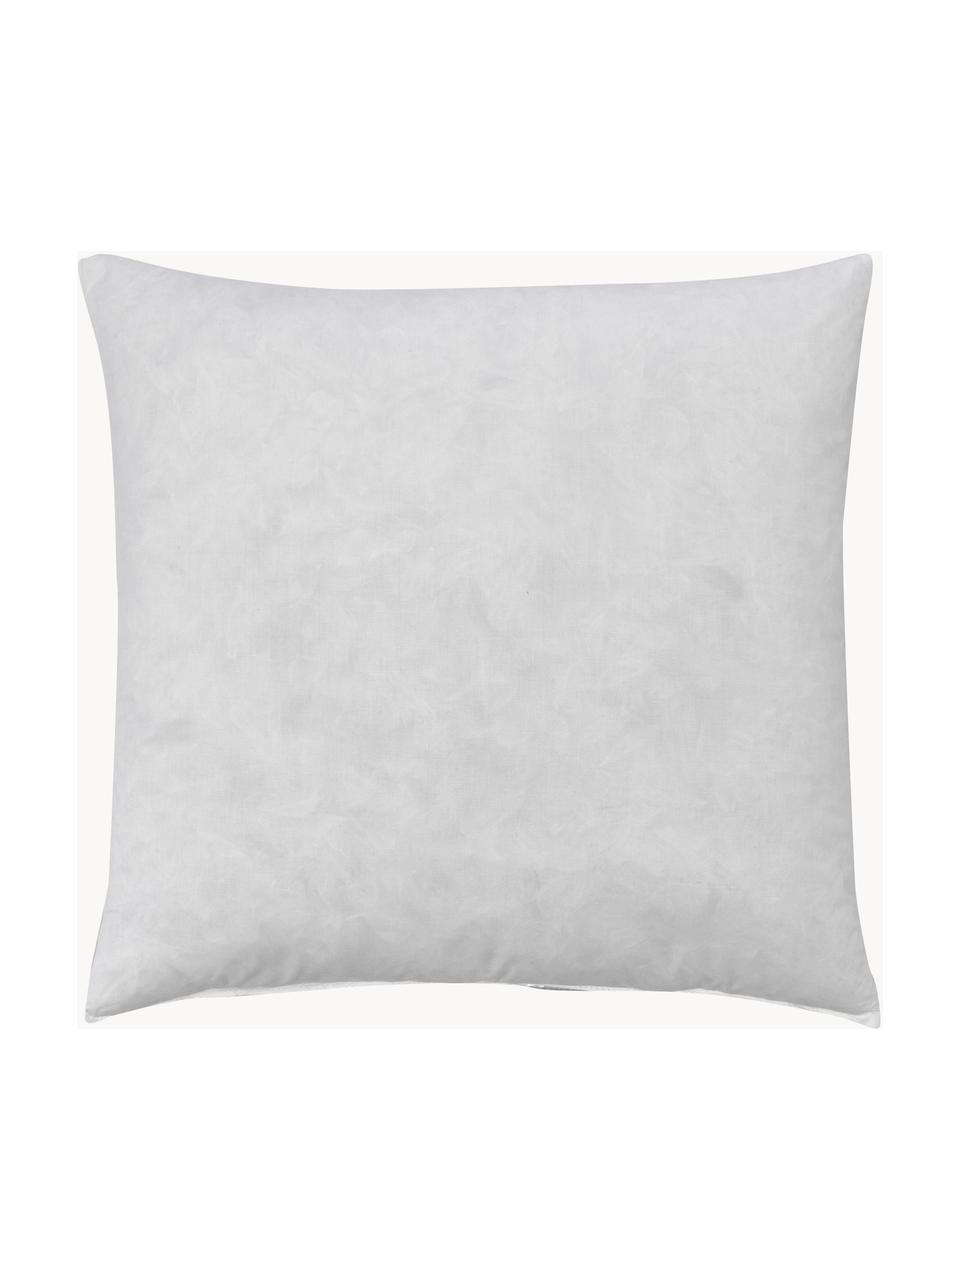 Výplň dekorativního polštáře Comfort, péřová výplň, různé velikosti, Bílá, Š 50 cm, D 50 cm